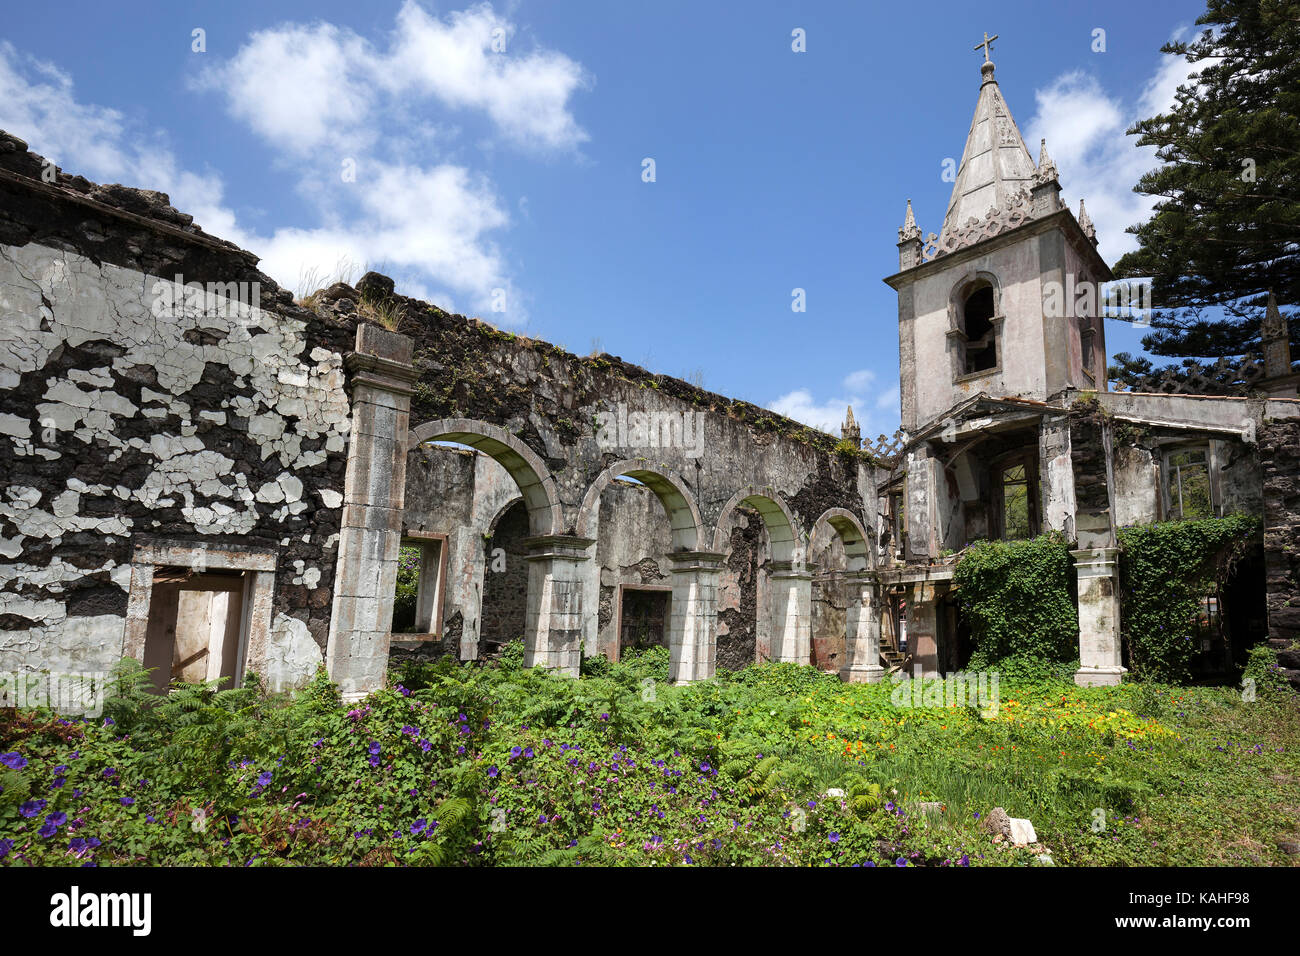 Chiesa distrutta nel 1998 Terremoto in ribeirinha, isola di Faial, Azzorre, Portogallo Foto Stock